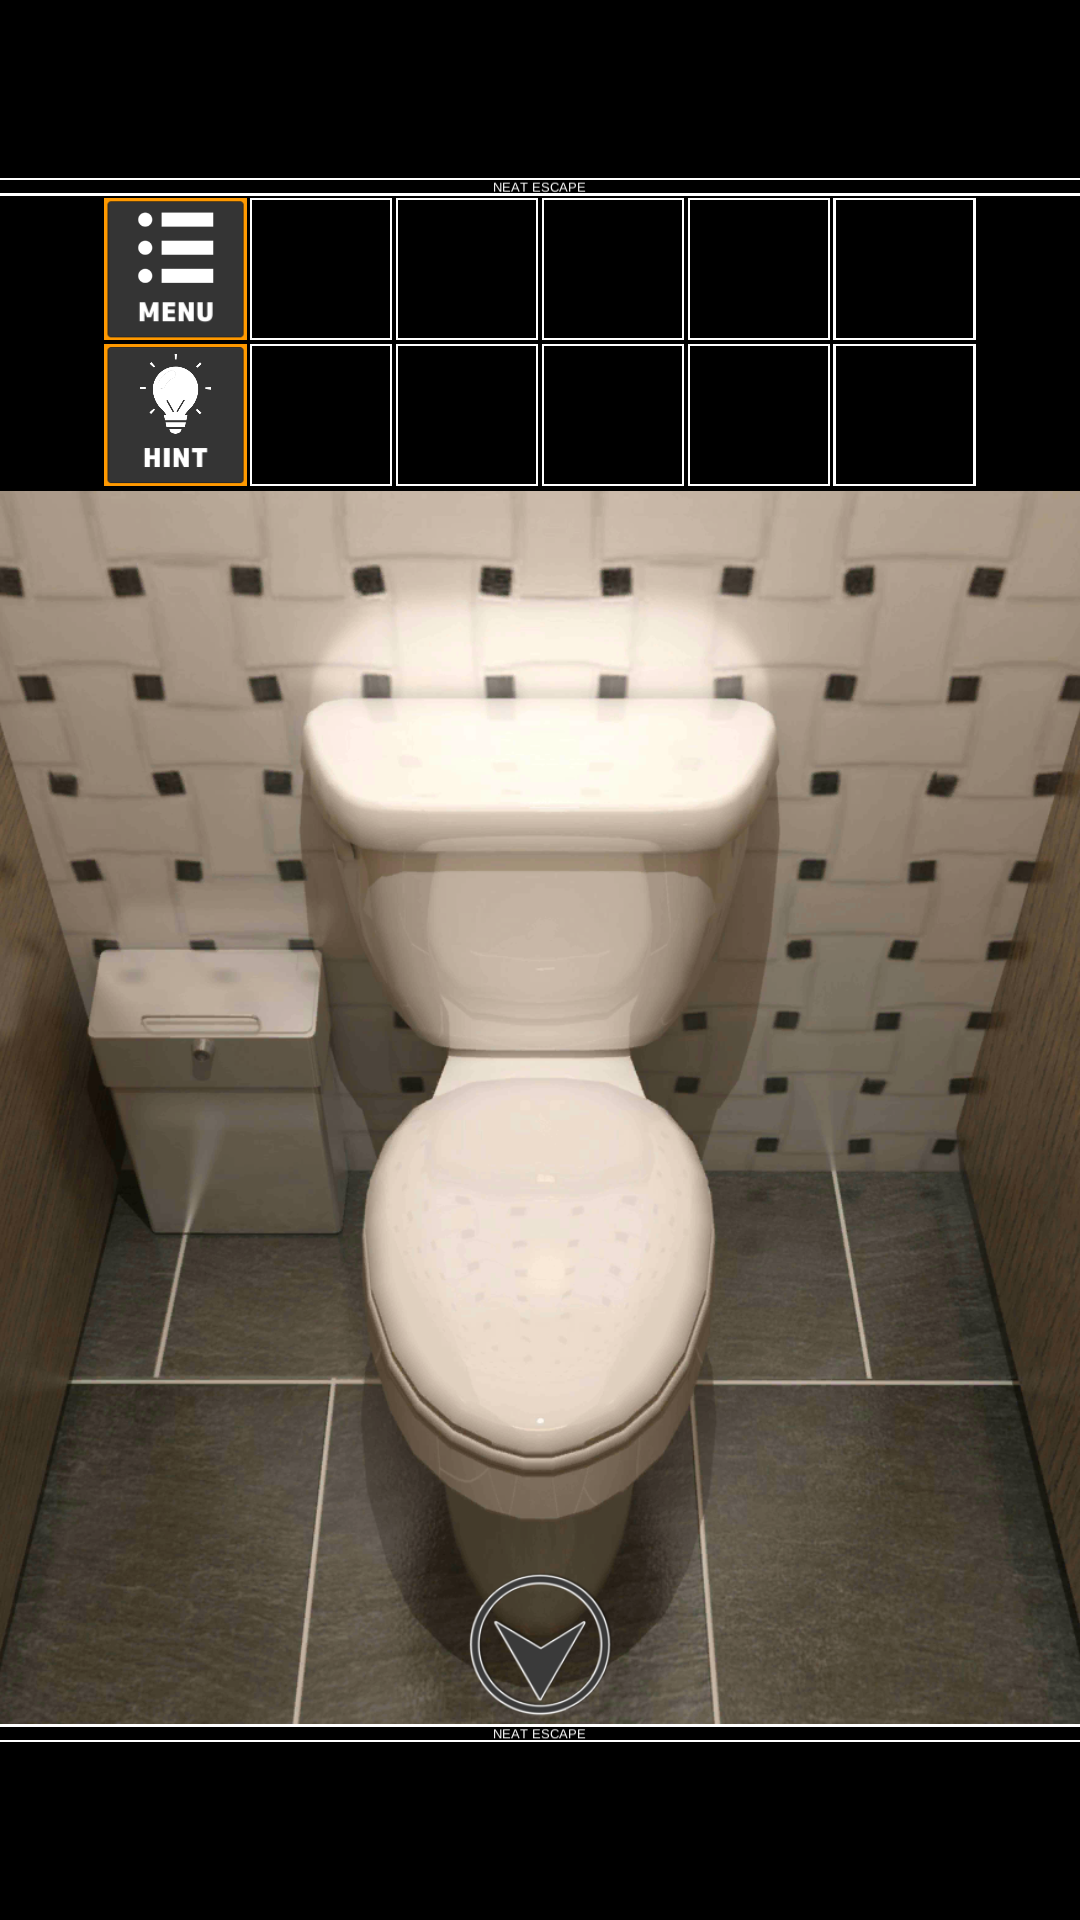 Screenshot 1 of Fluchtspiel: Restroom2 1.60